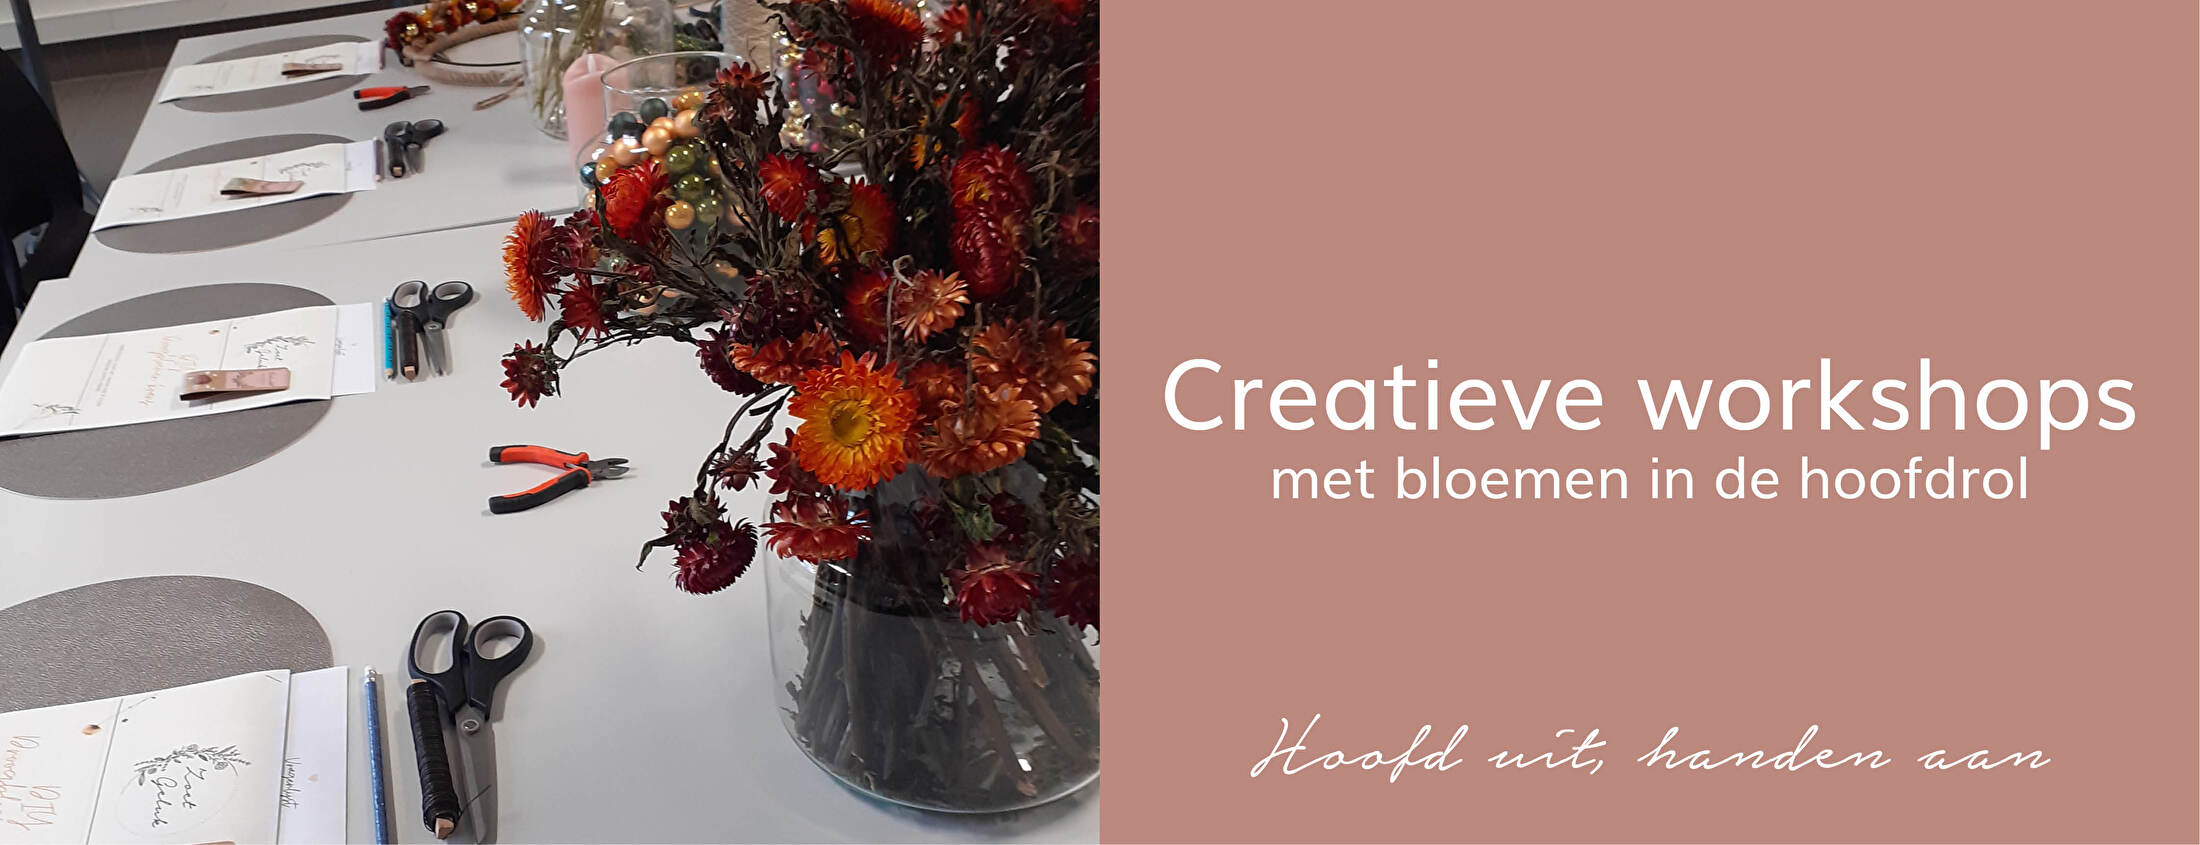 creatieve workshops met bloemen